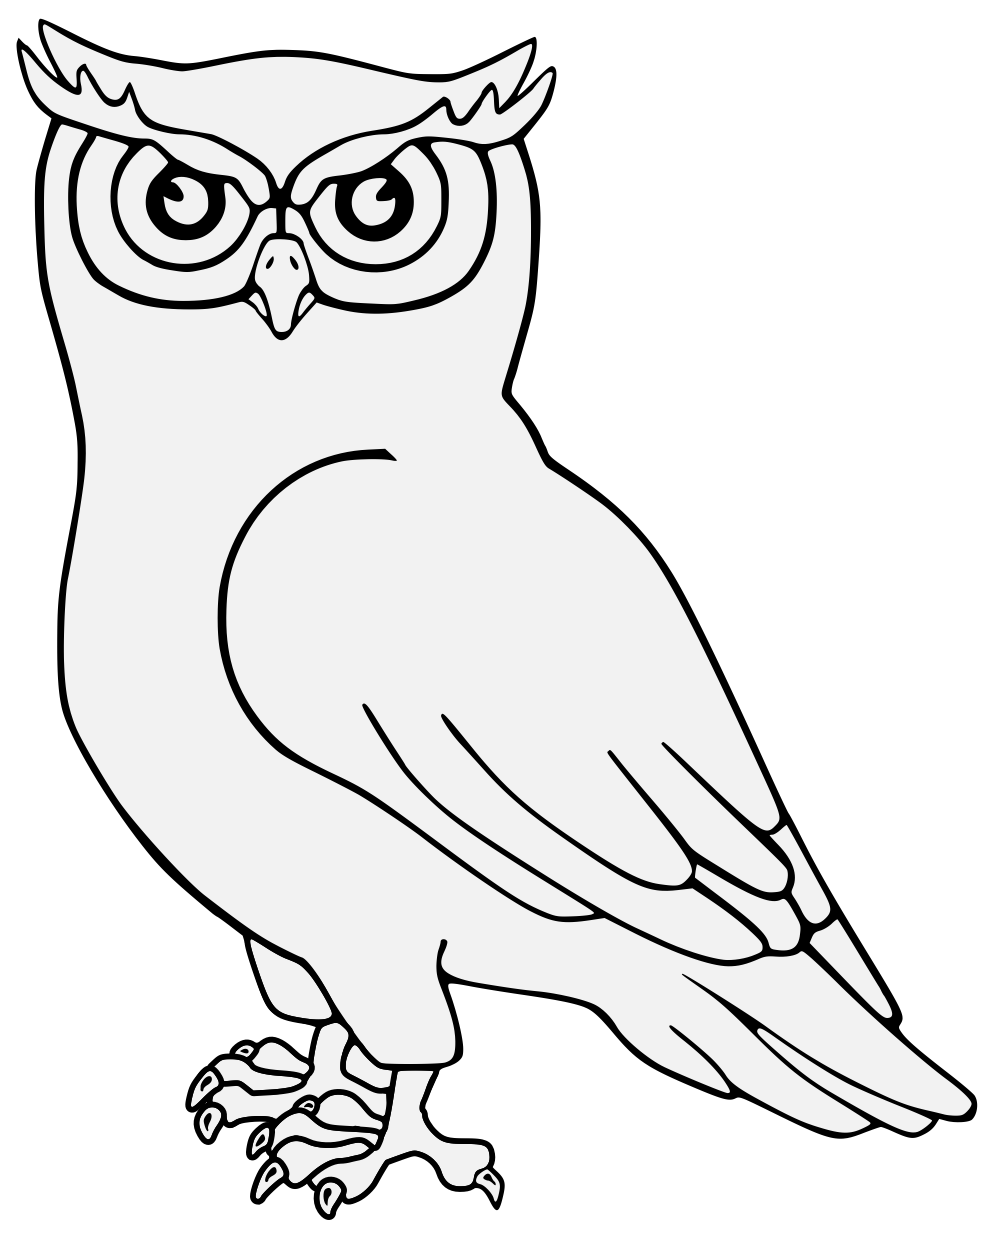 Owl - Traceable Heraldic Art